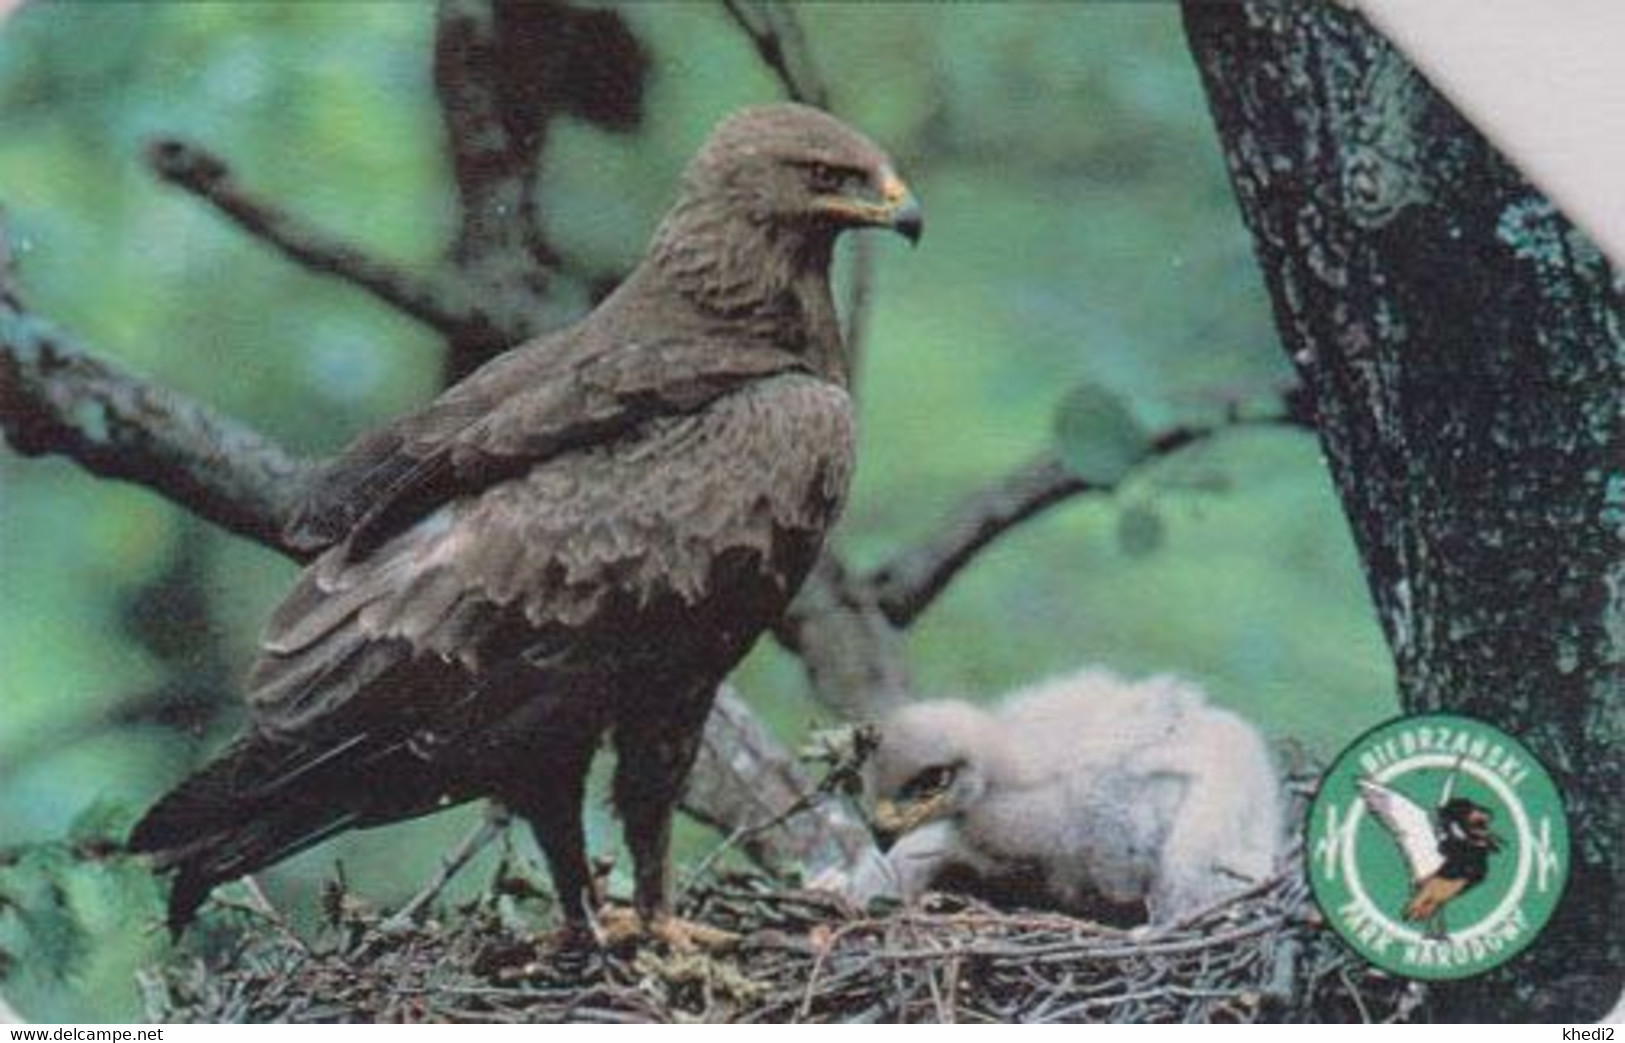 TC POLOGNE - ANIMAL / Série Bierbrzanski Park 4/10 - OISEAU AIGLE POMARIN Au Nid - EAGLE BIRD POLAND Phonecard - BE 5525 - Adler & Greifvögel